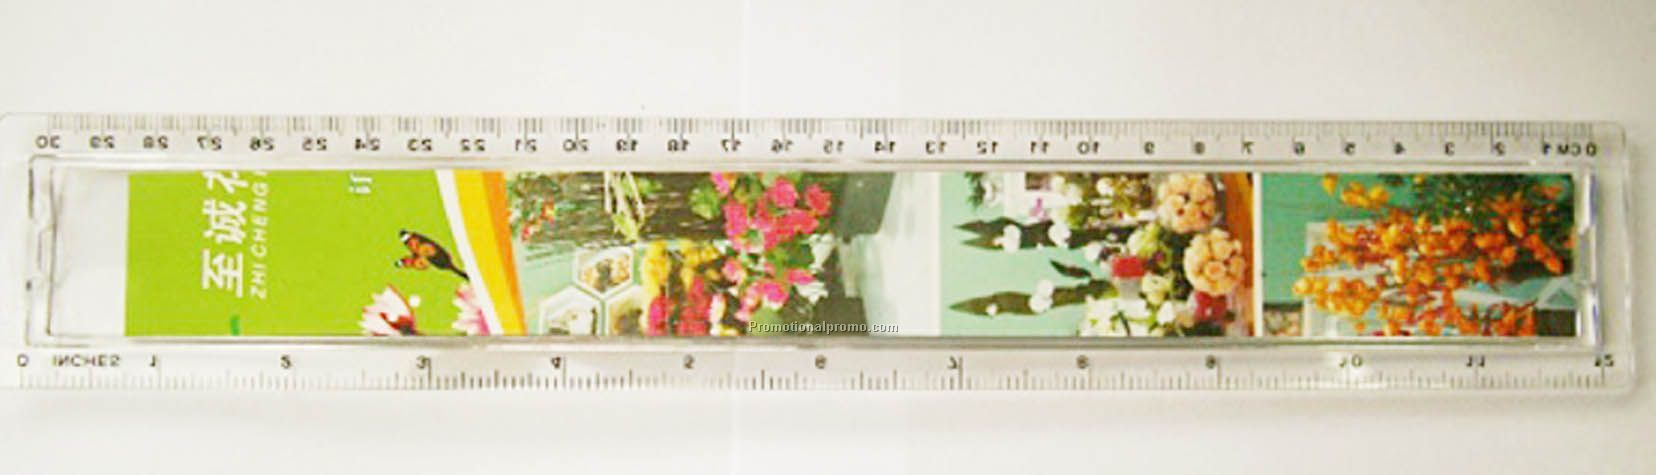 Plastic adview rulers